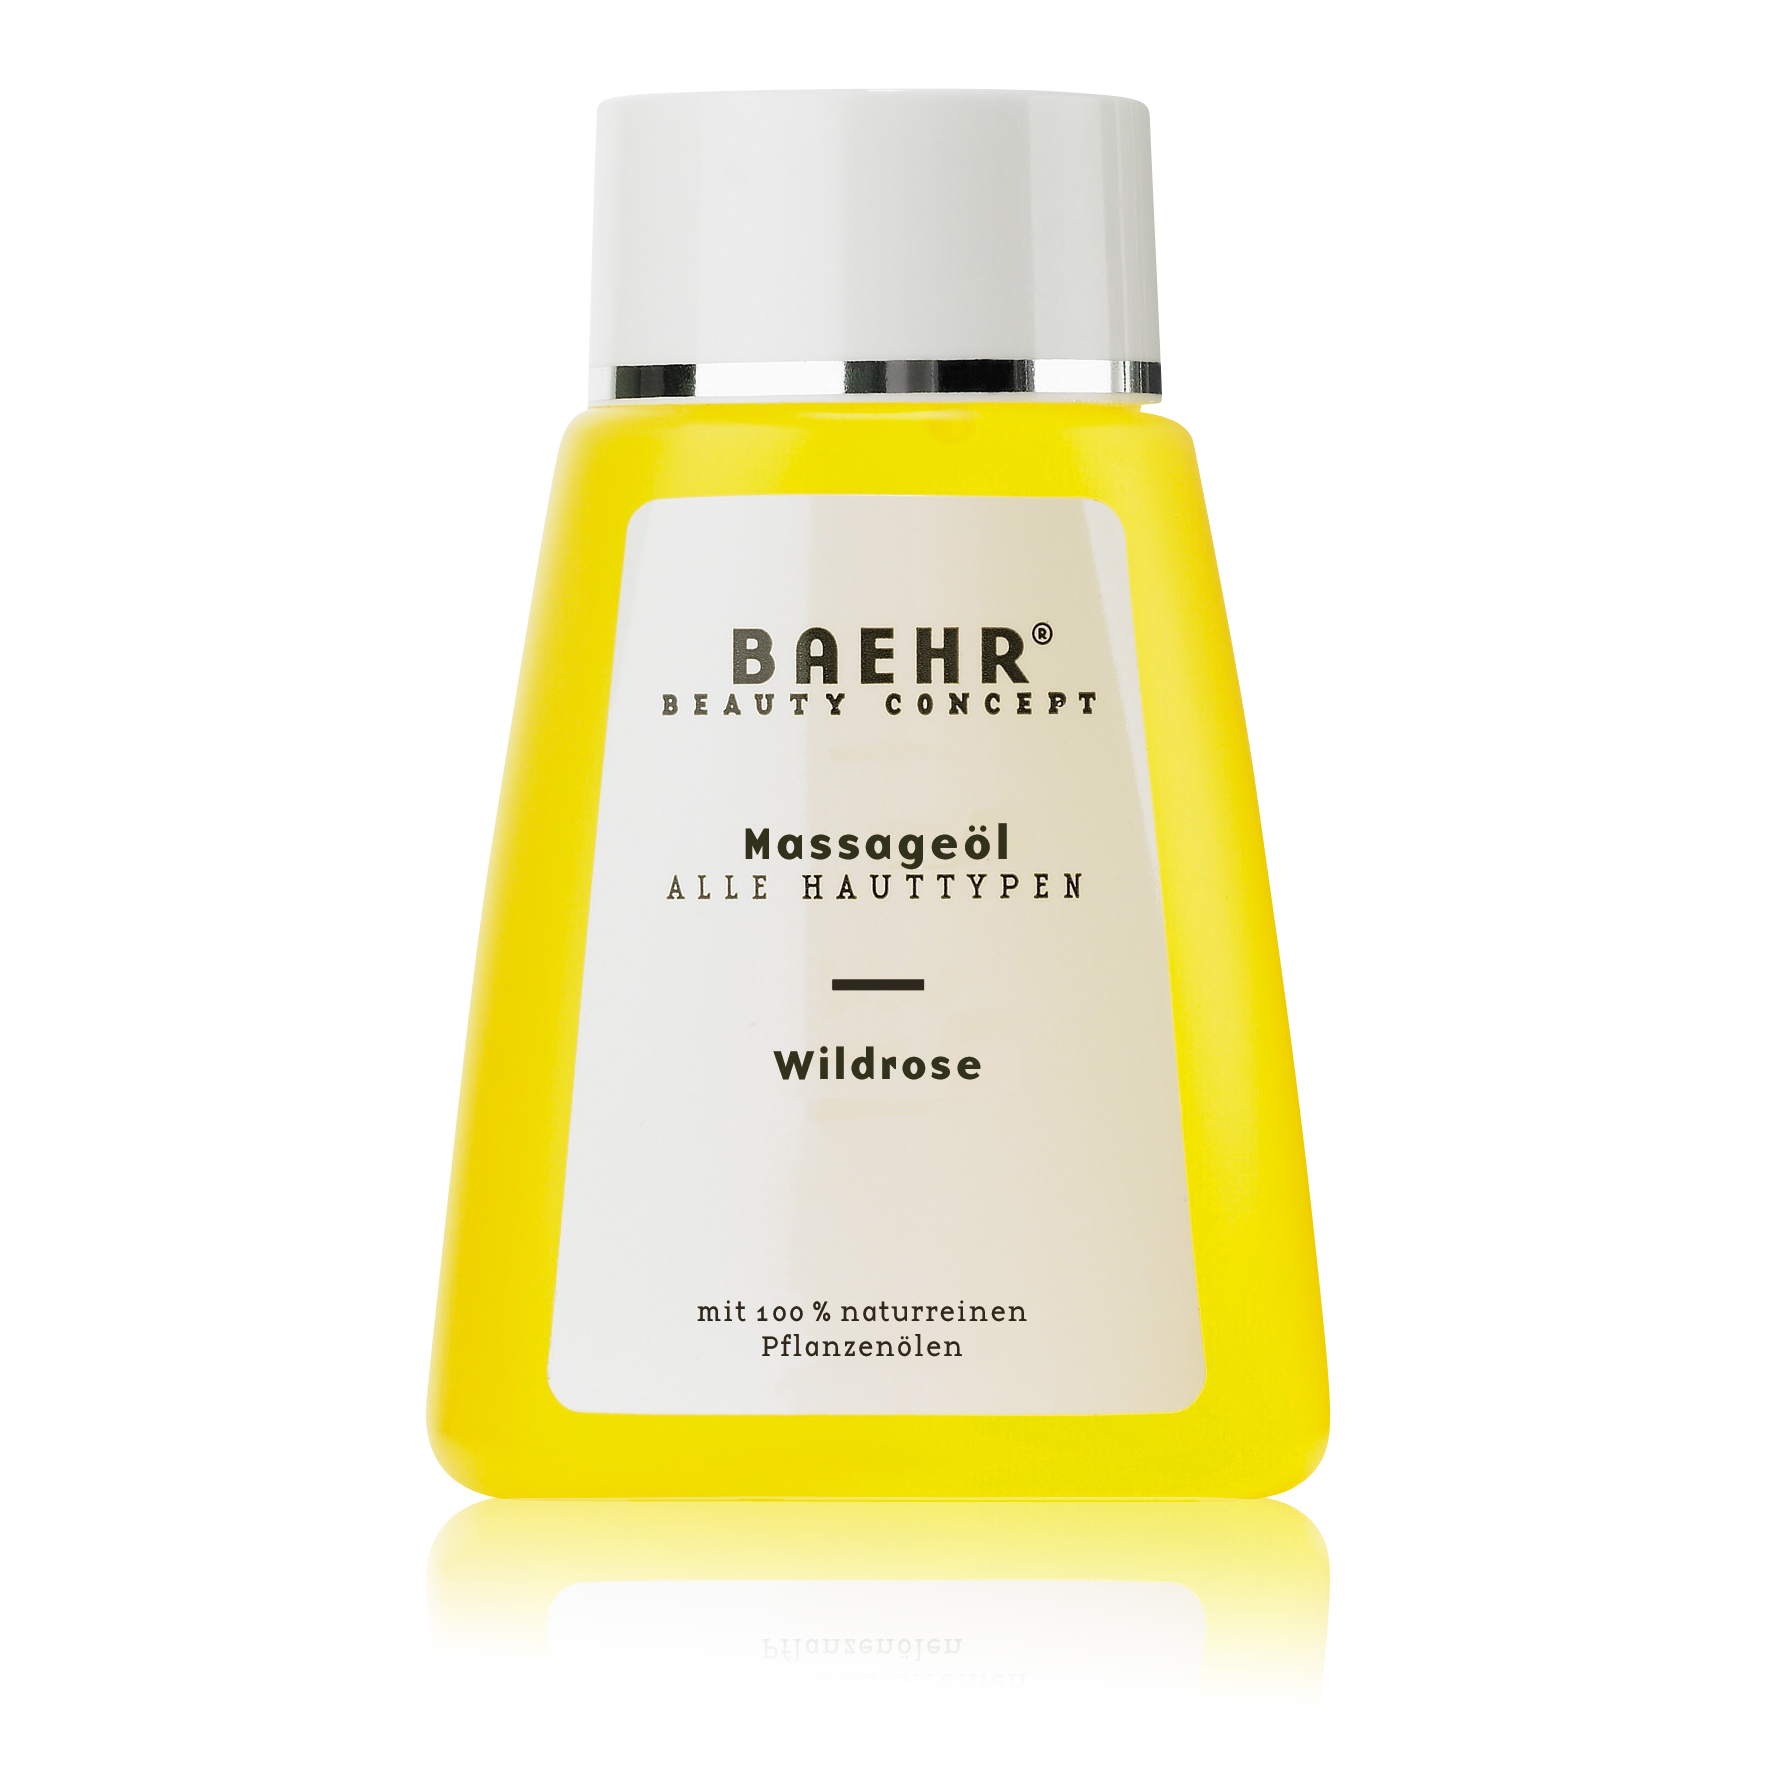 BAEHR BEAUTY CONCEPT Massageöl Wildrose Flasche 100 ml